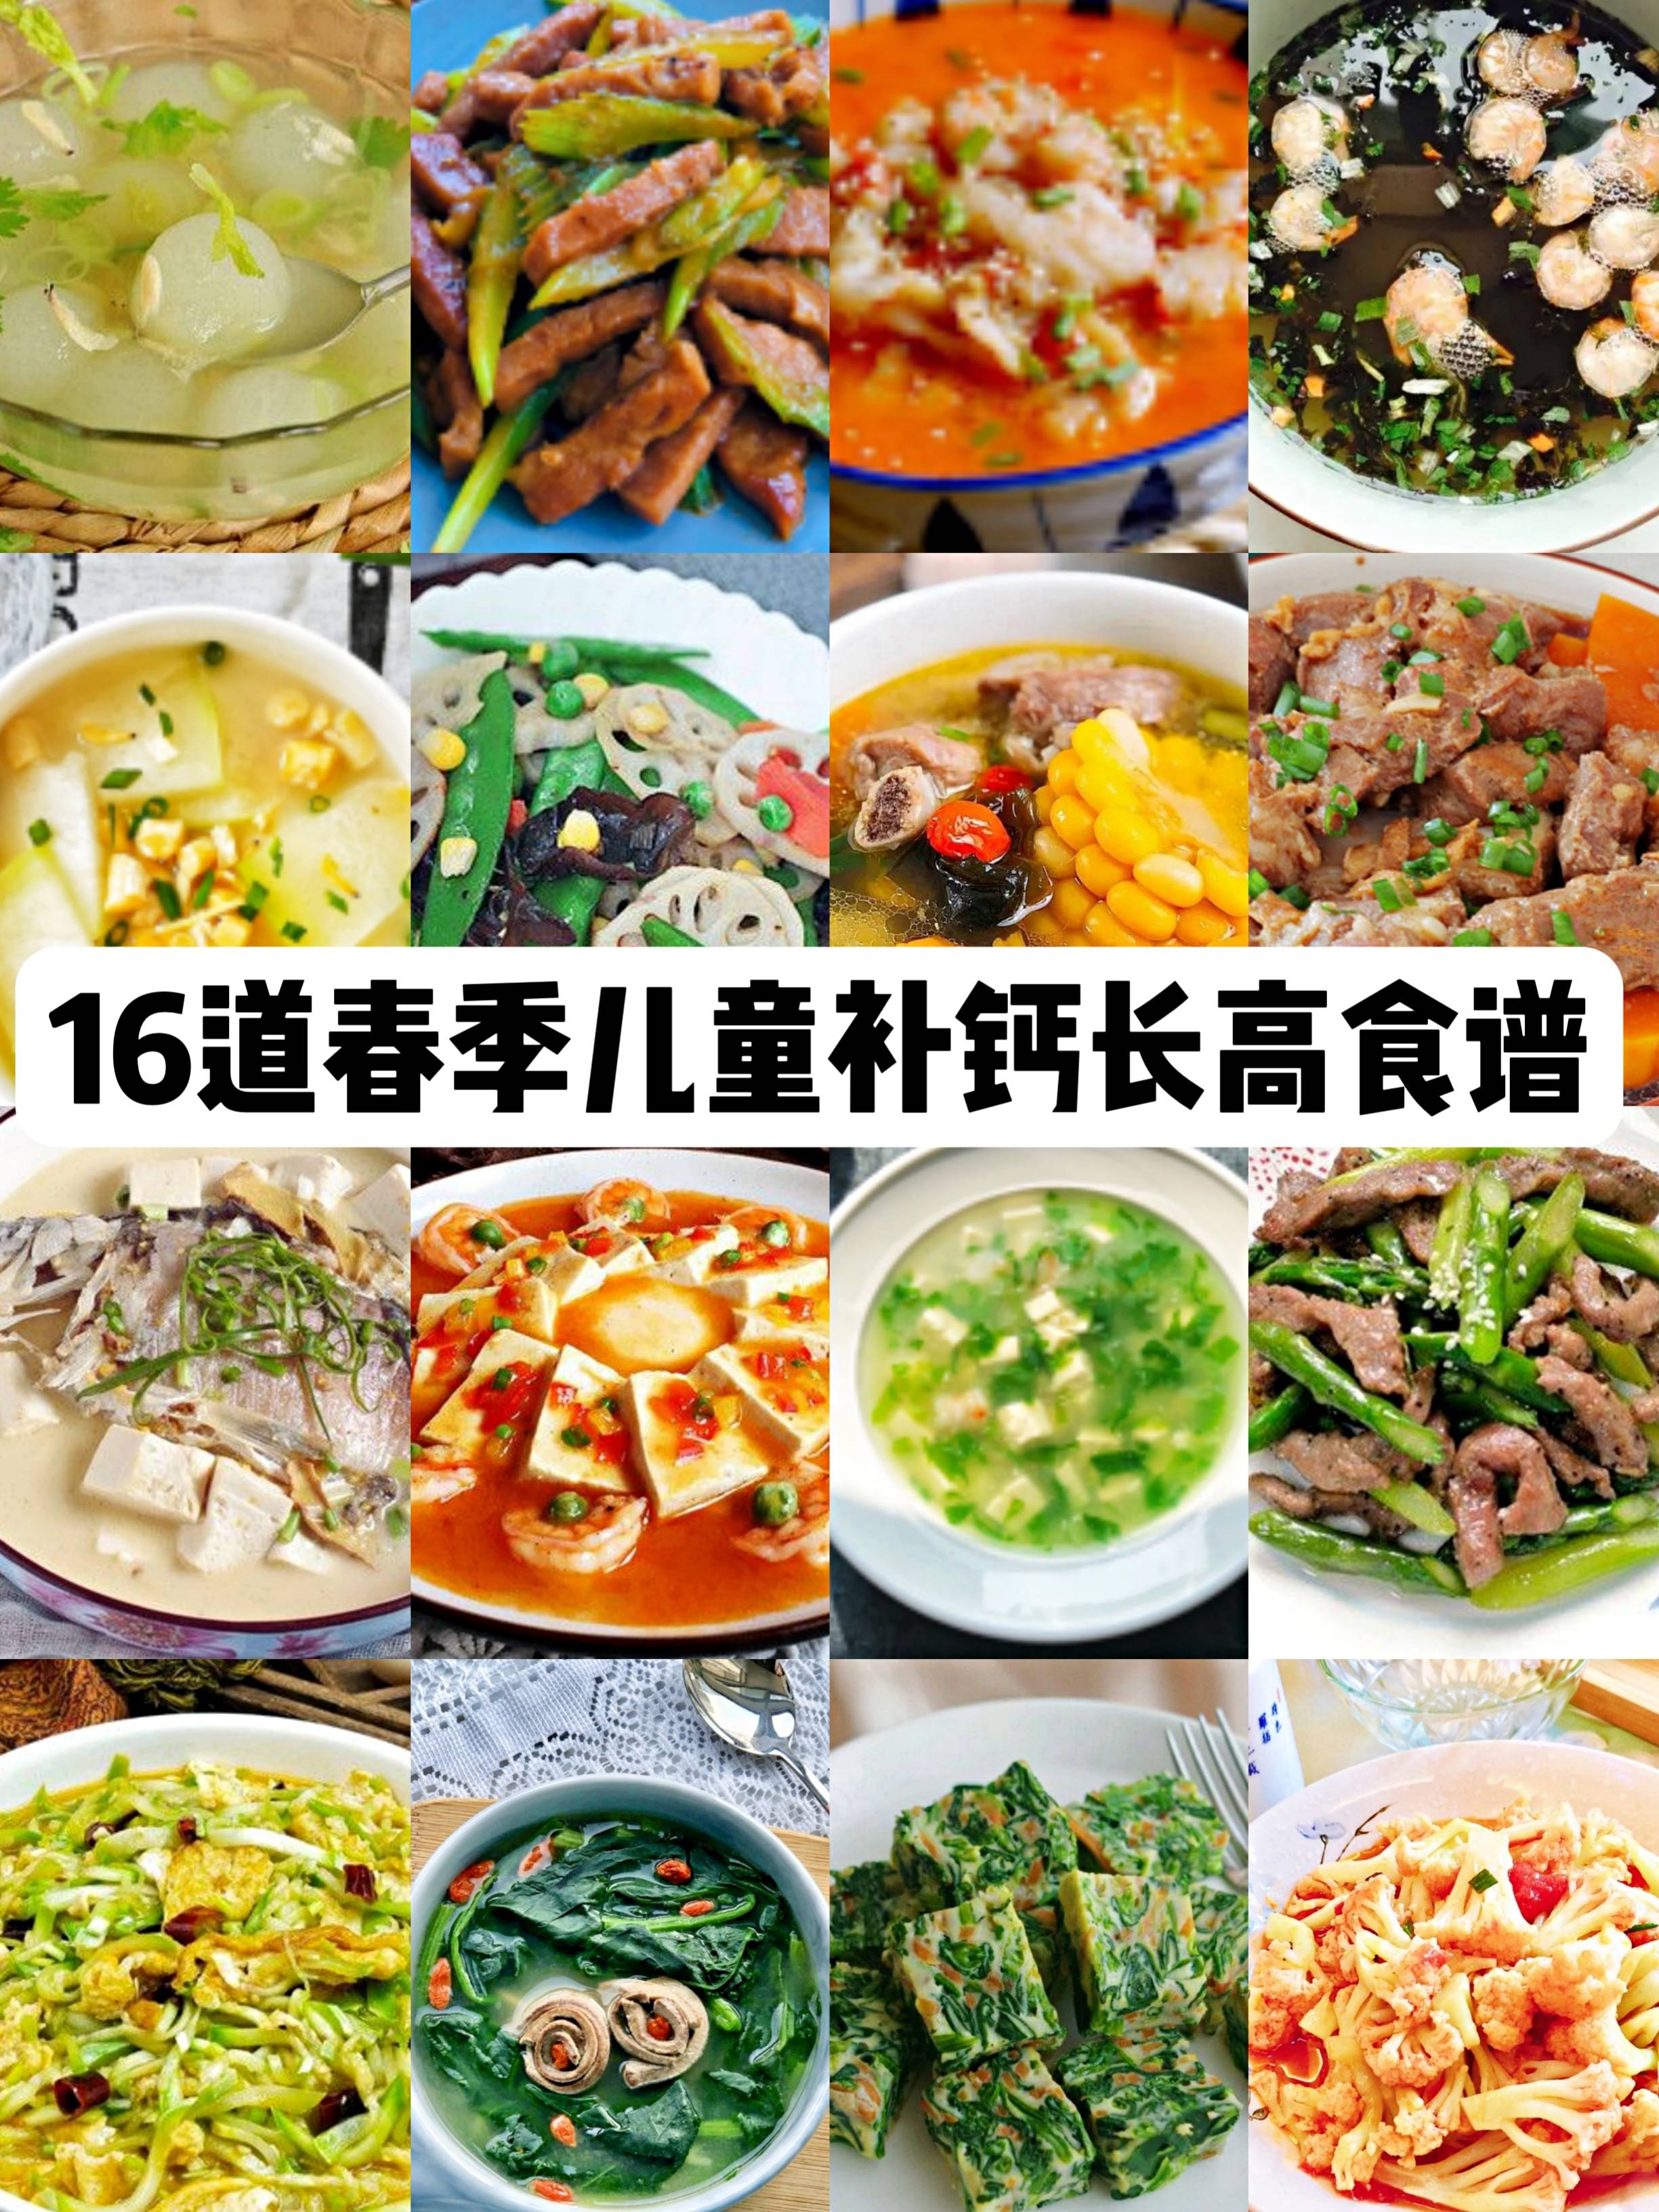 2018年9月13日幼儿一日菜谱 - 每日菜谱照片 - 杭州京江幼儿园